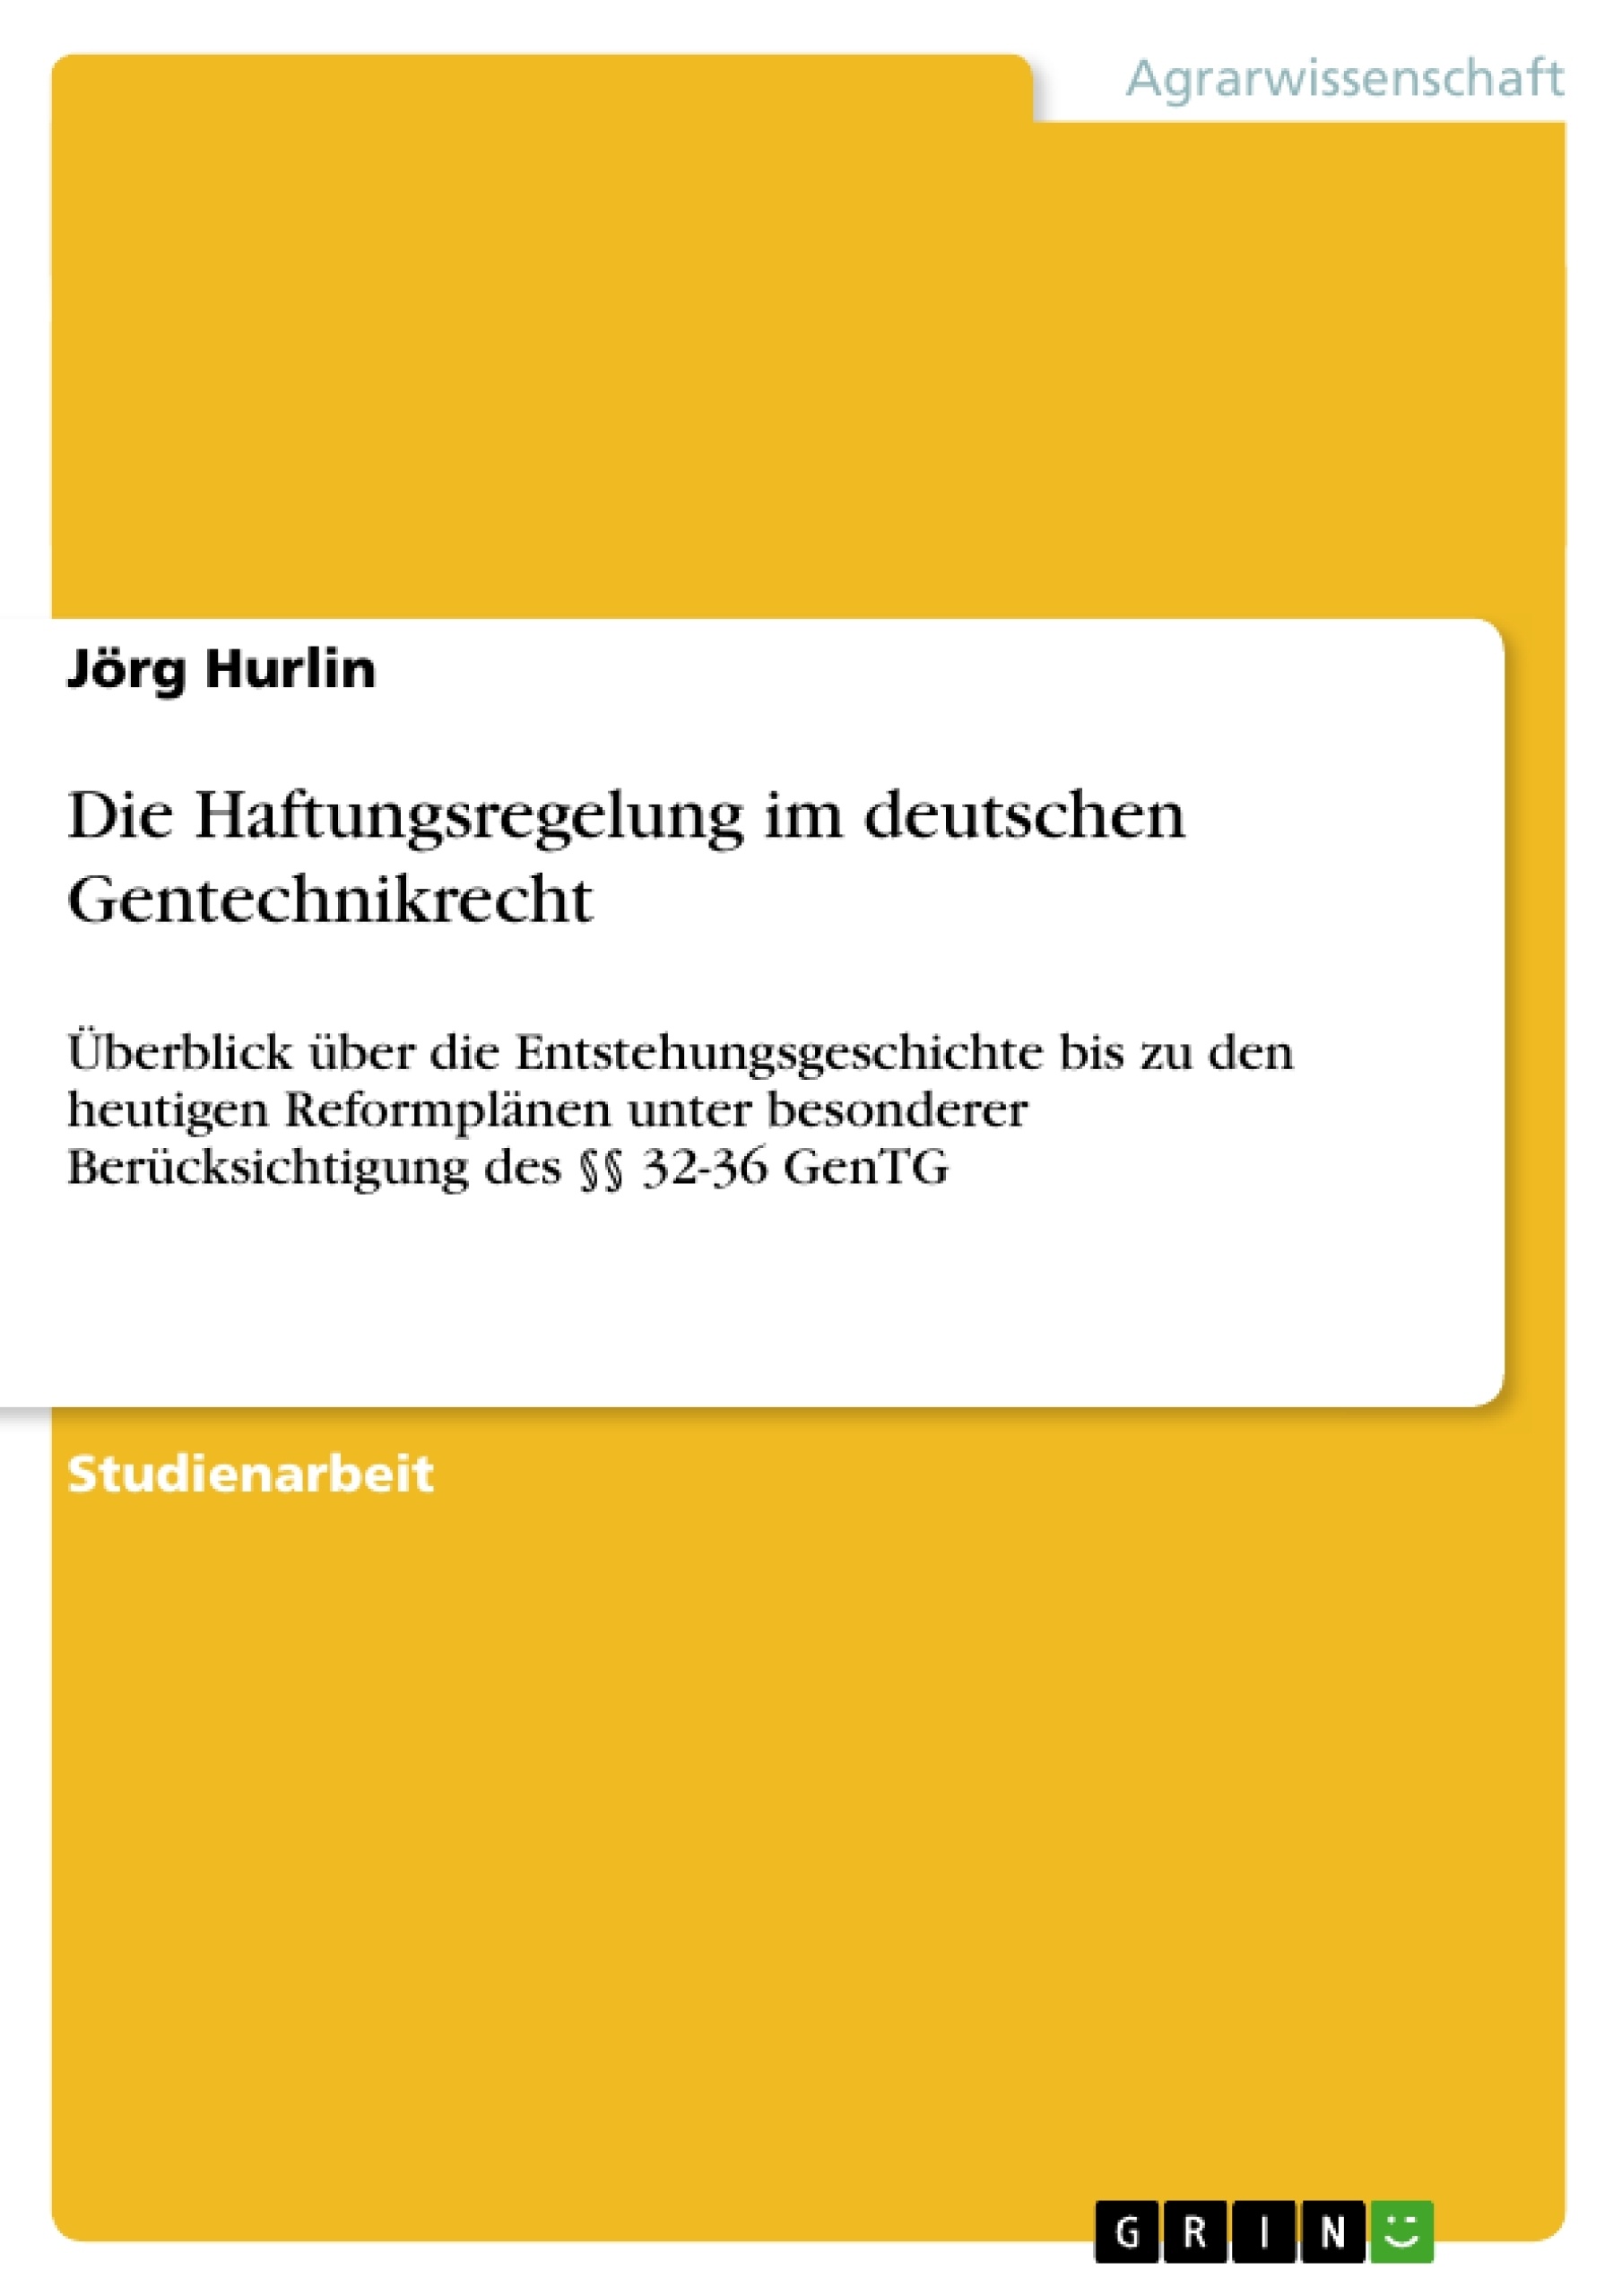 Title: Die Haftungsregelung im deutschen Gentechnikrecht